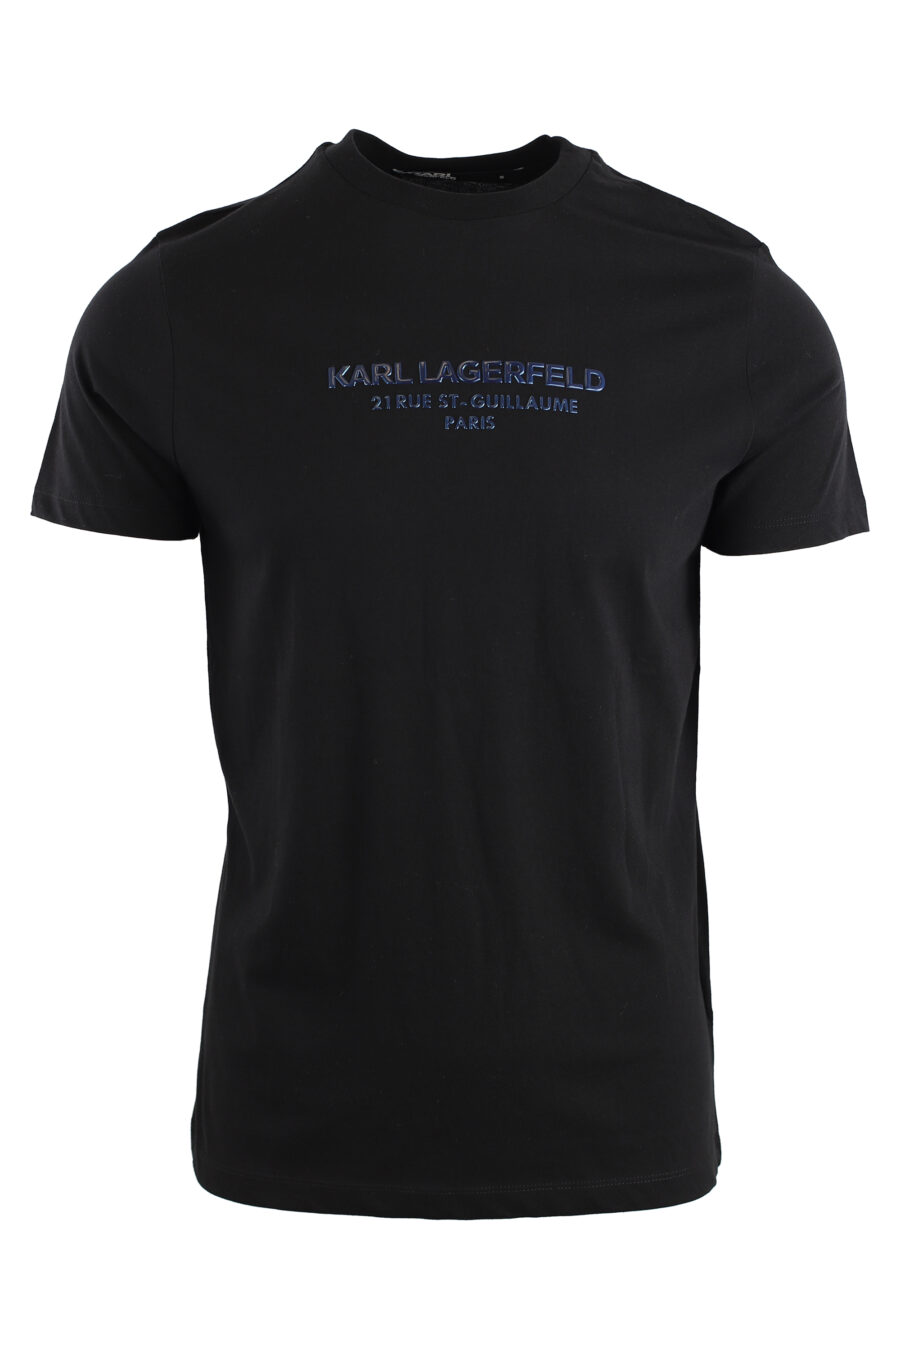 Schwarzes T-Shirt mit blauem Metallic-Logo - IMG 7550